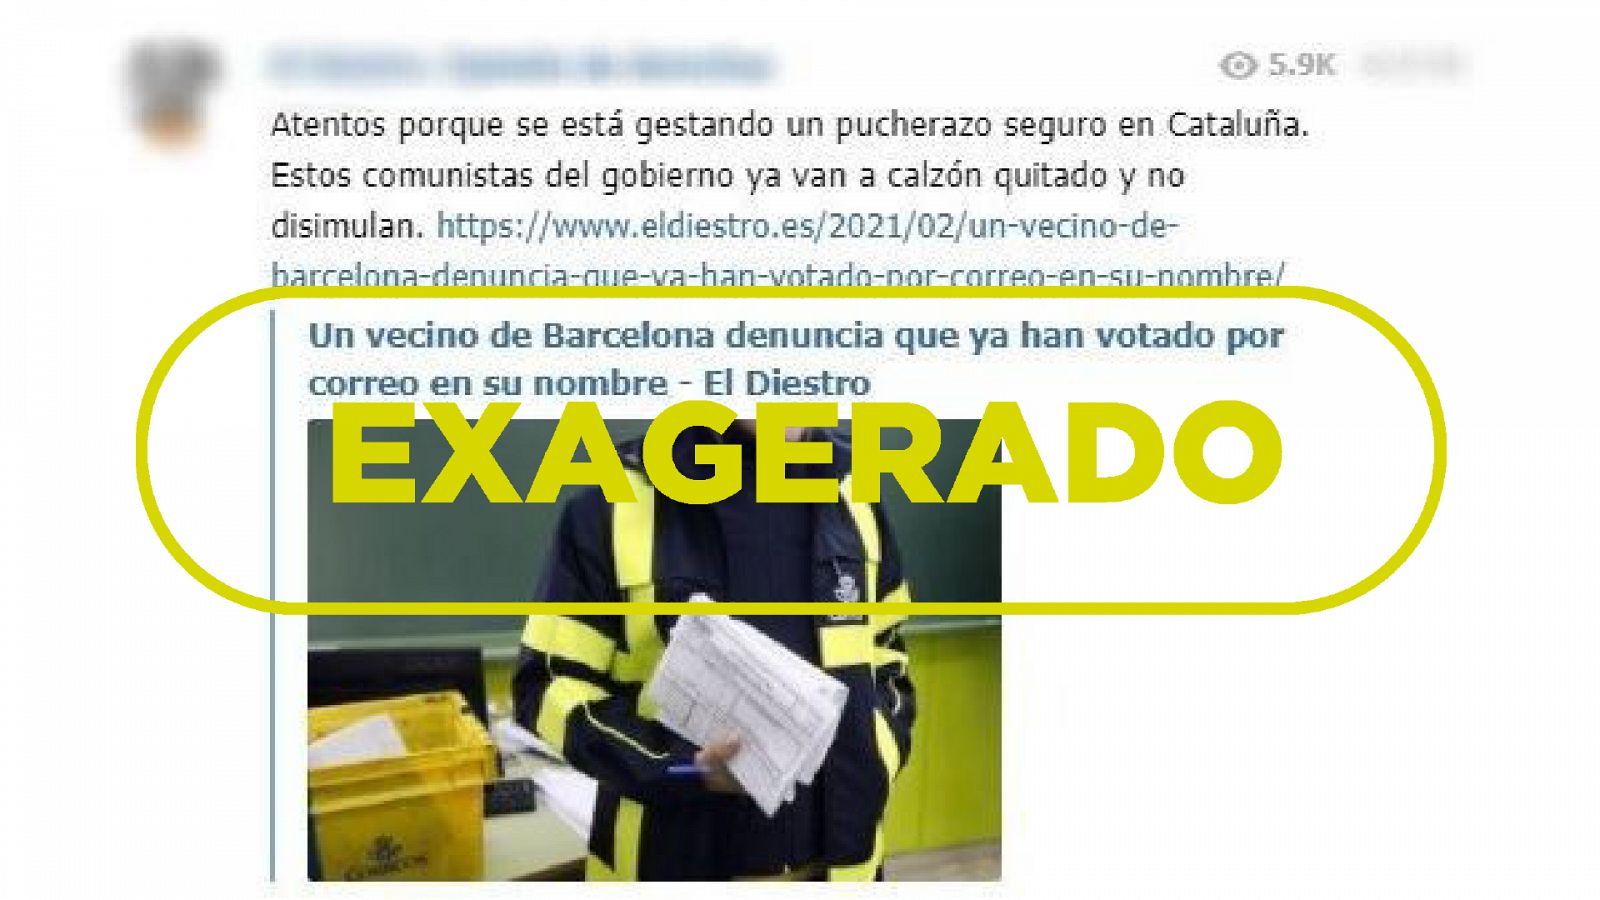 Captura del mensaje que denuncia que alguien votó por un elector en Barcelona con el sello Exagerado de VerificaRTVE